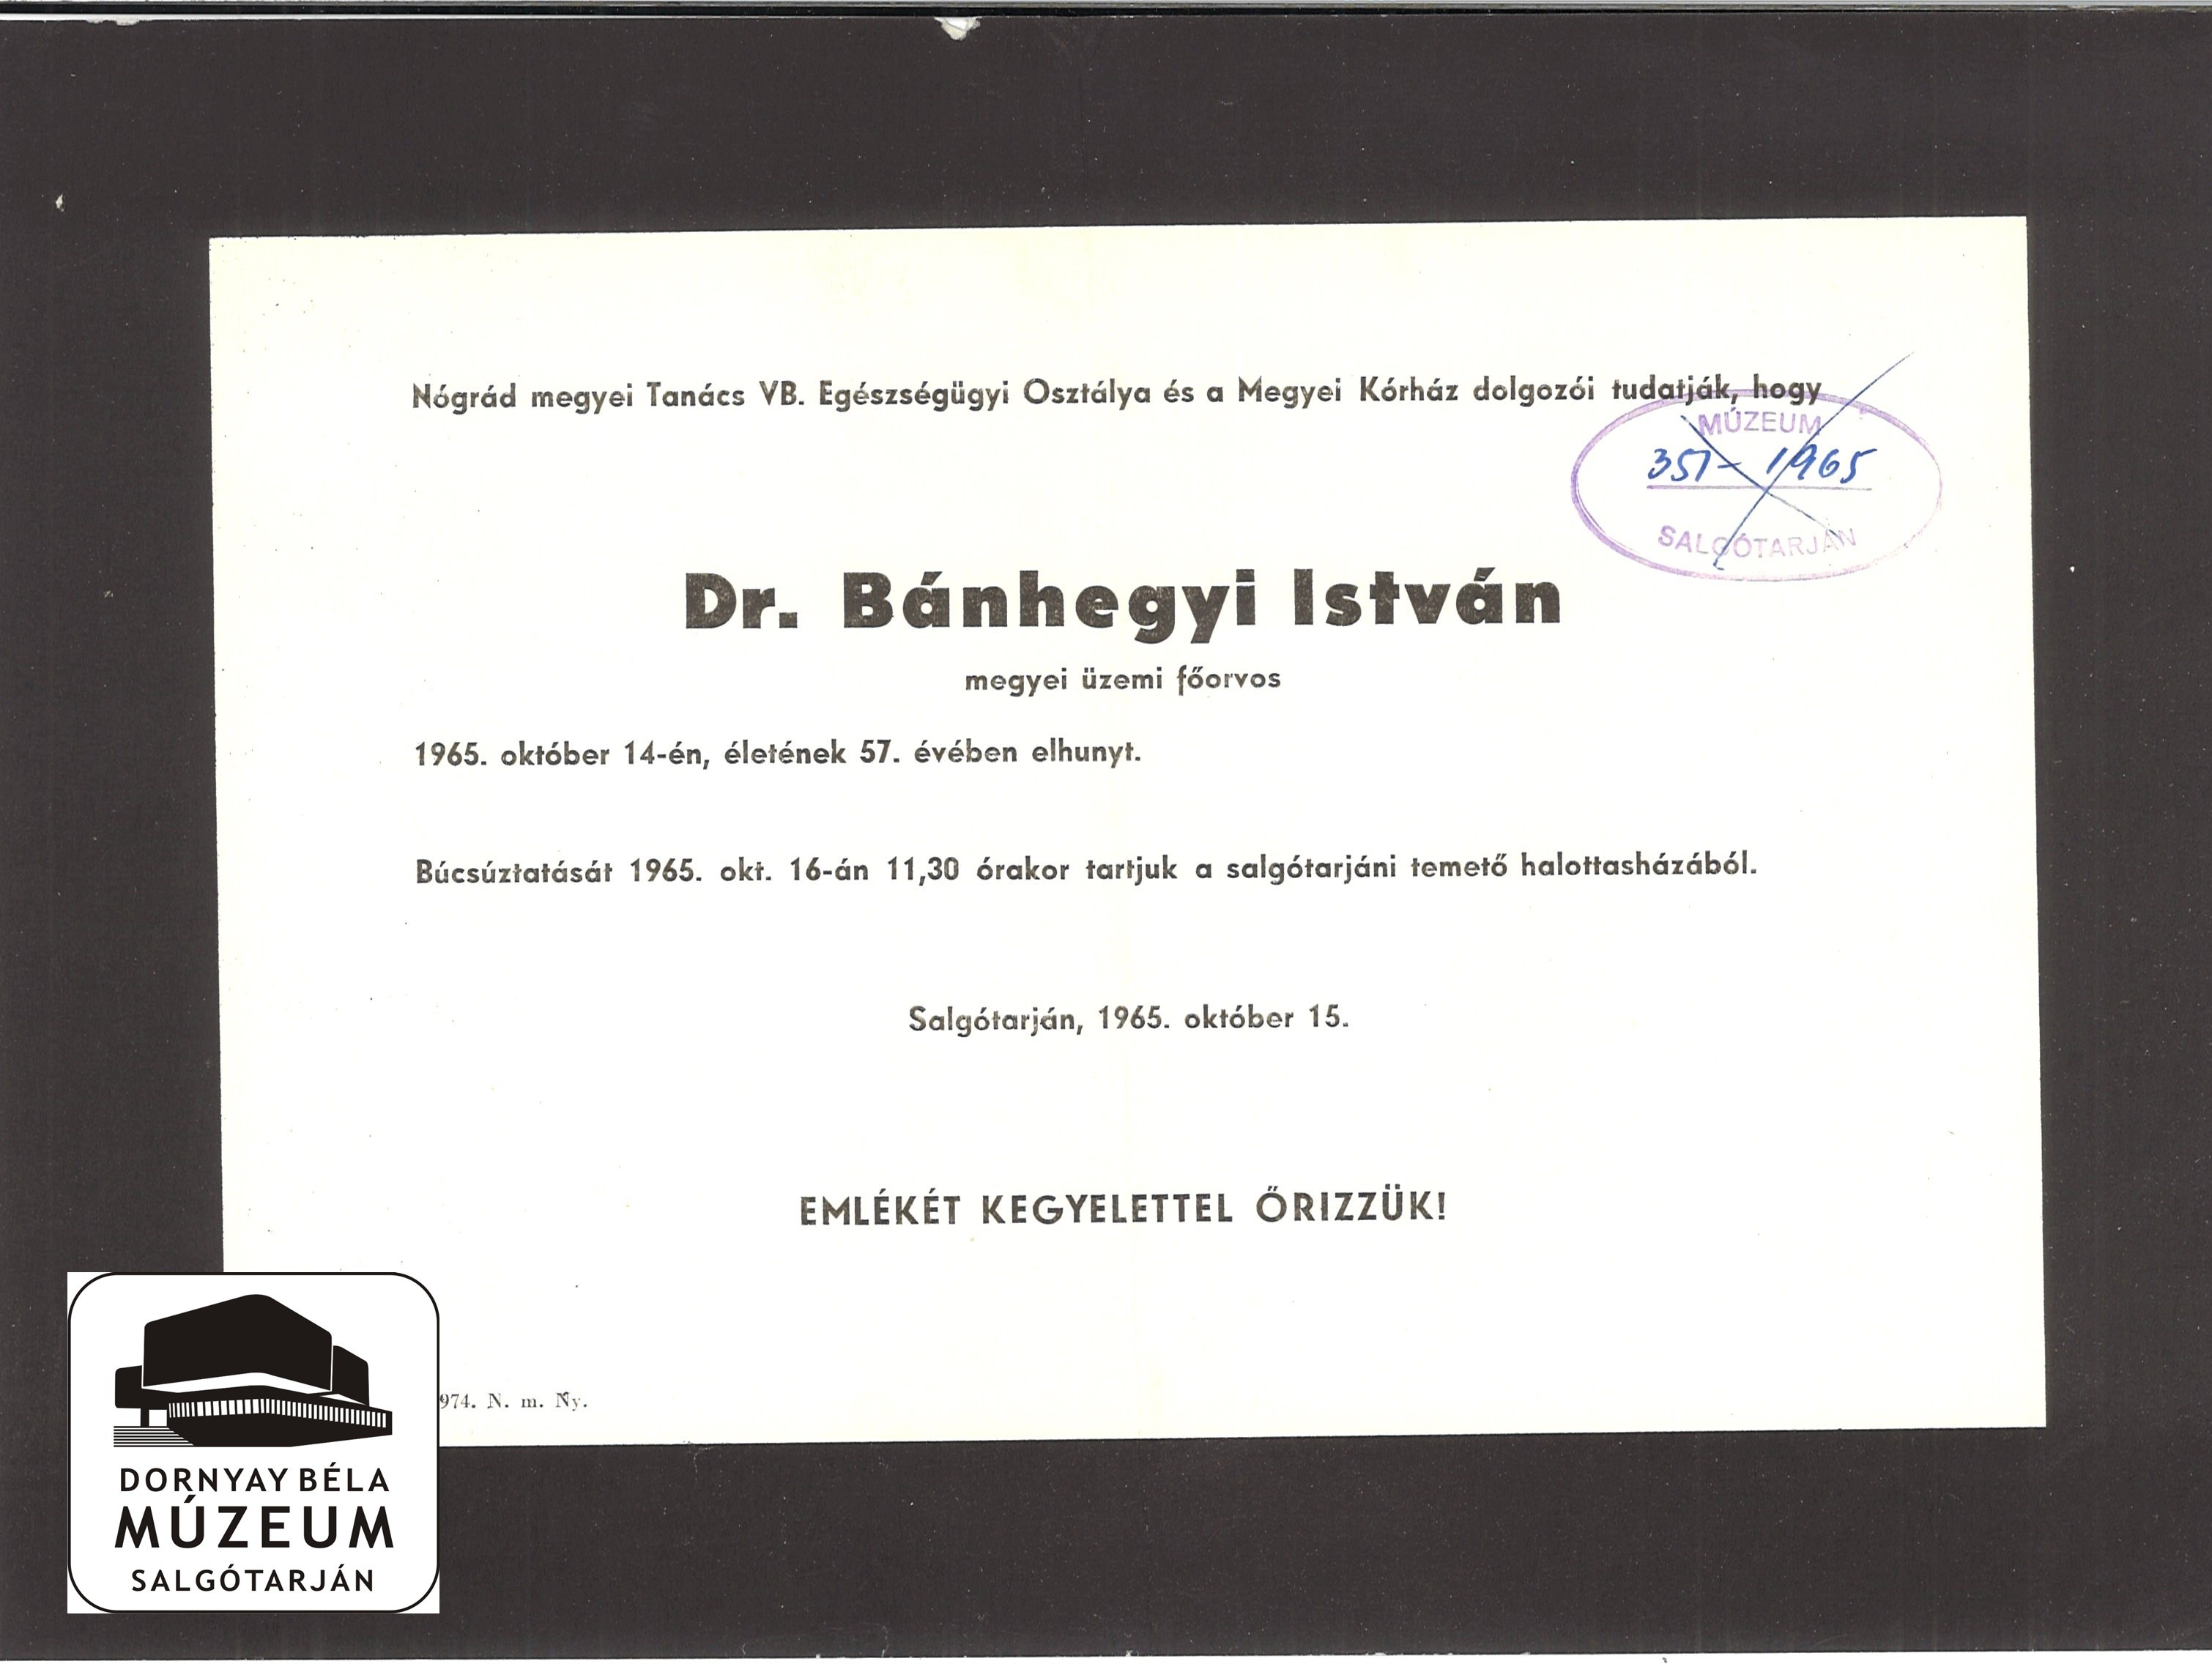 Dr. Bánhegyi István gyászjelentése (Dornyay Béla Múzeum, Salgótarján CC BY-NC-SA)